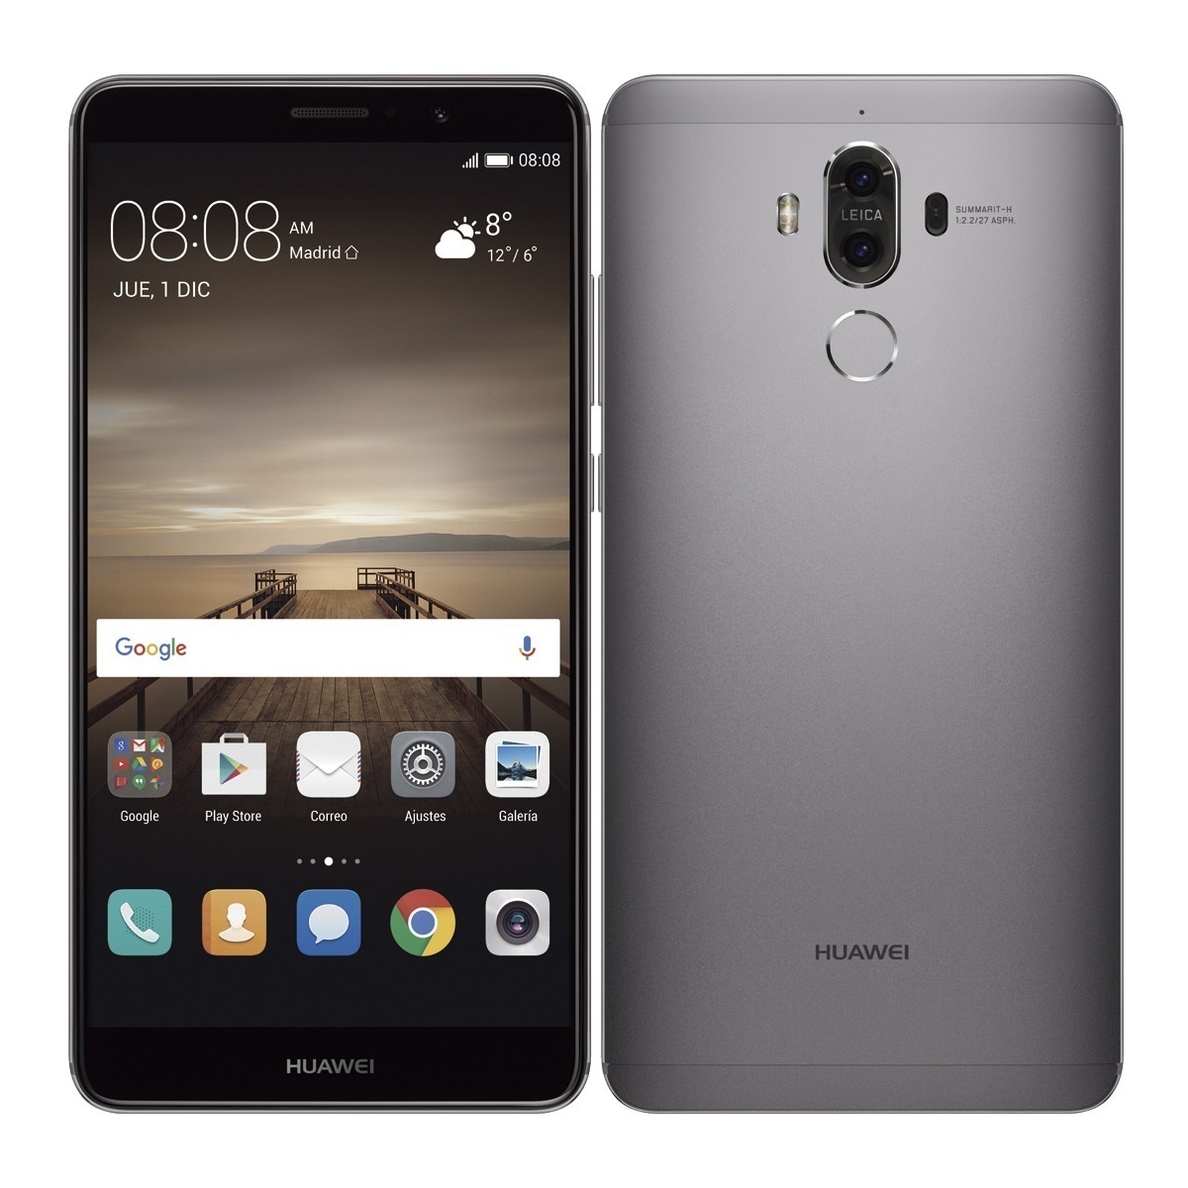 Huawei asegura que su »phablet» Mate 10 será mejor que iPhone 8 en velocidad de carga, cámaras y autonomía